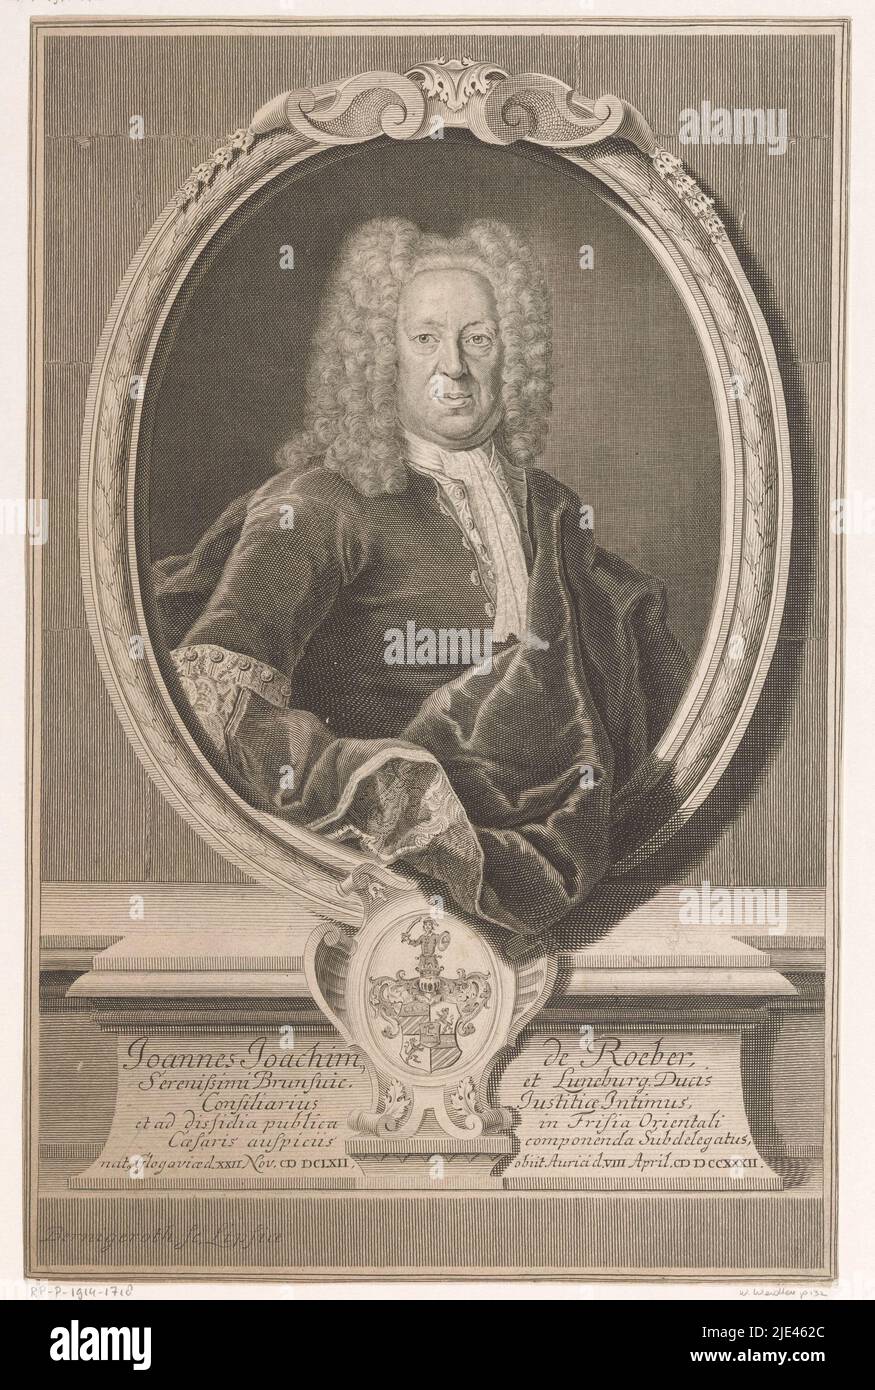 Ritratto di Johann Joachim von Roeber, Martin Bernigeroth, 1732 - 1733, tipografo: Martin Bernigeroth, (menzionato sull'oggetto), Lipsia, 1732 - 1733, carta, incisione, a 309 mm x l 200 mm Foto Stock